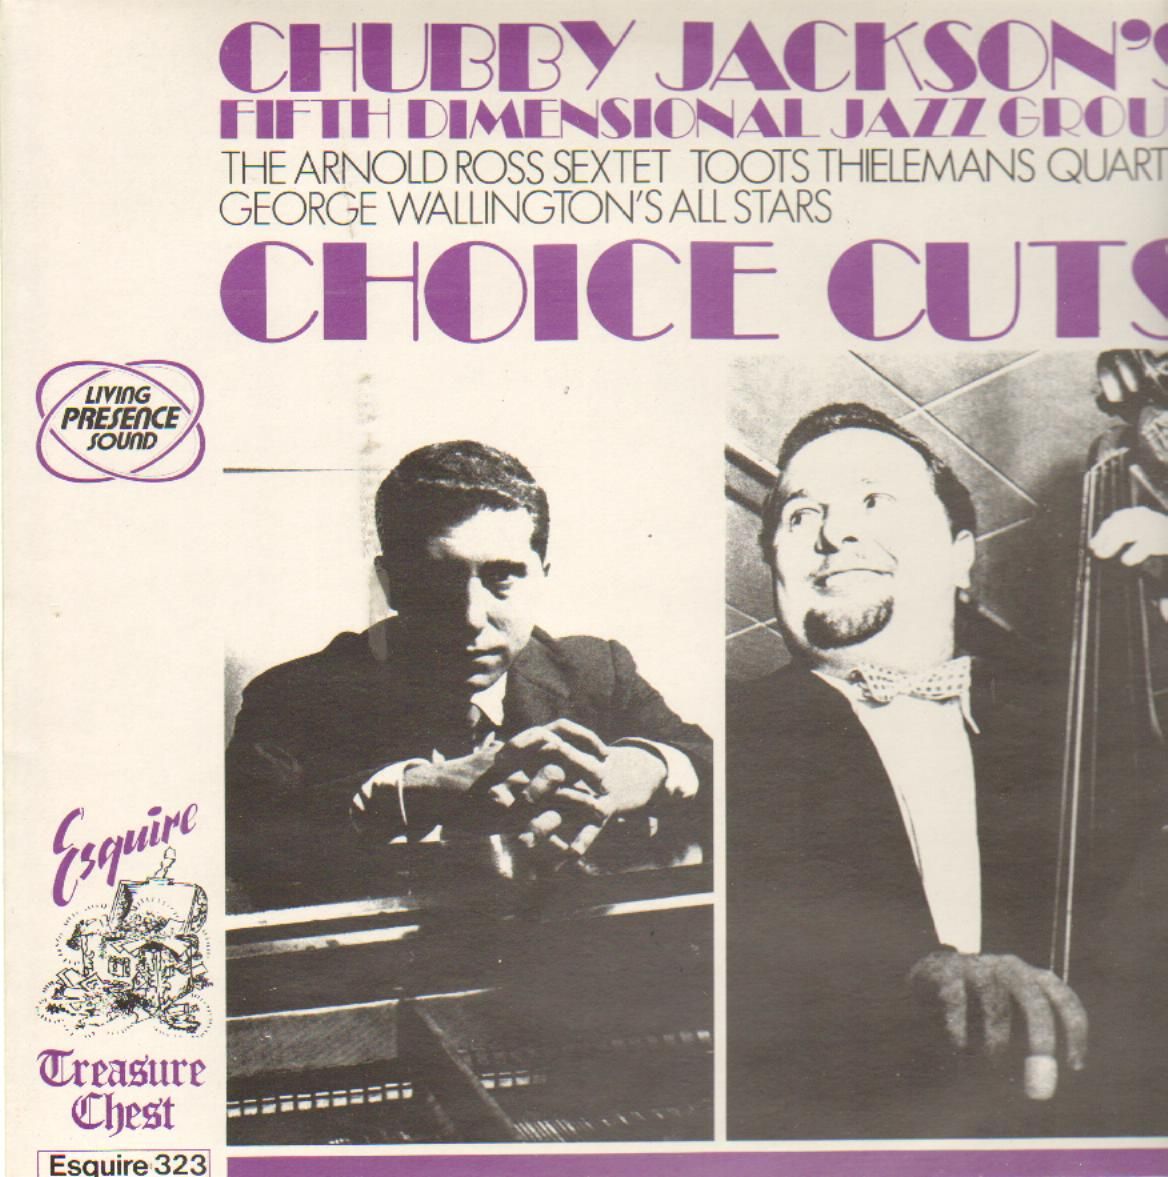 CHUBBY JACKSON - Chubby Jackson's Fitfth Dimensional Jazz Group : Choice Cuts cover 